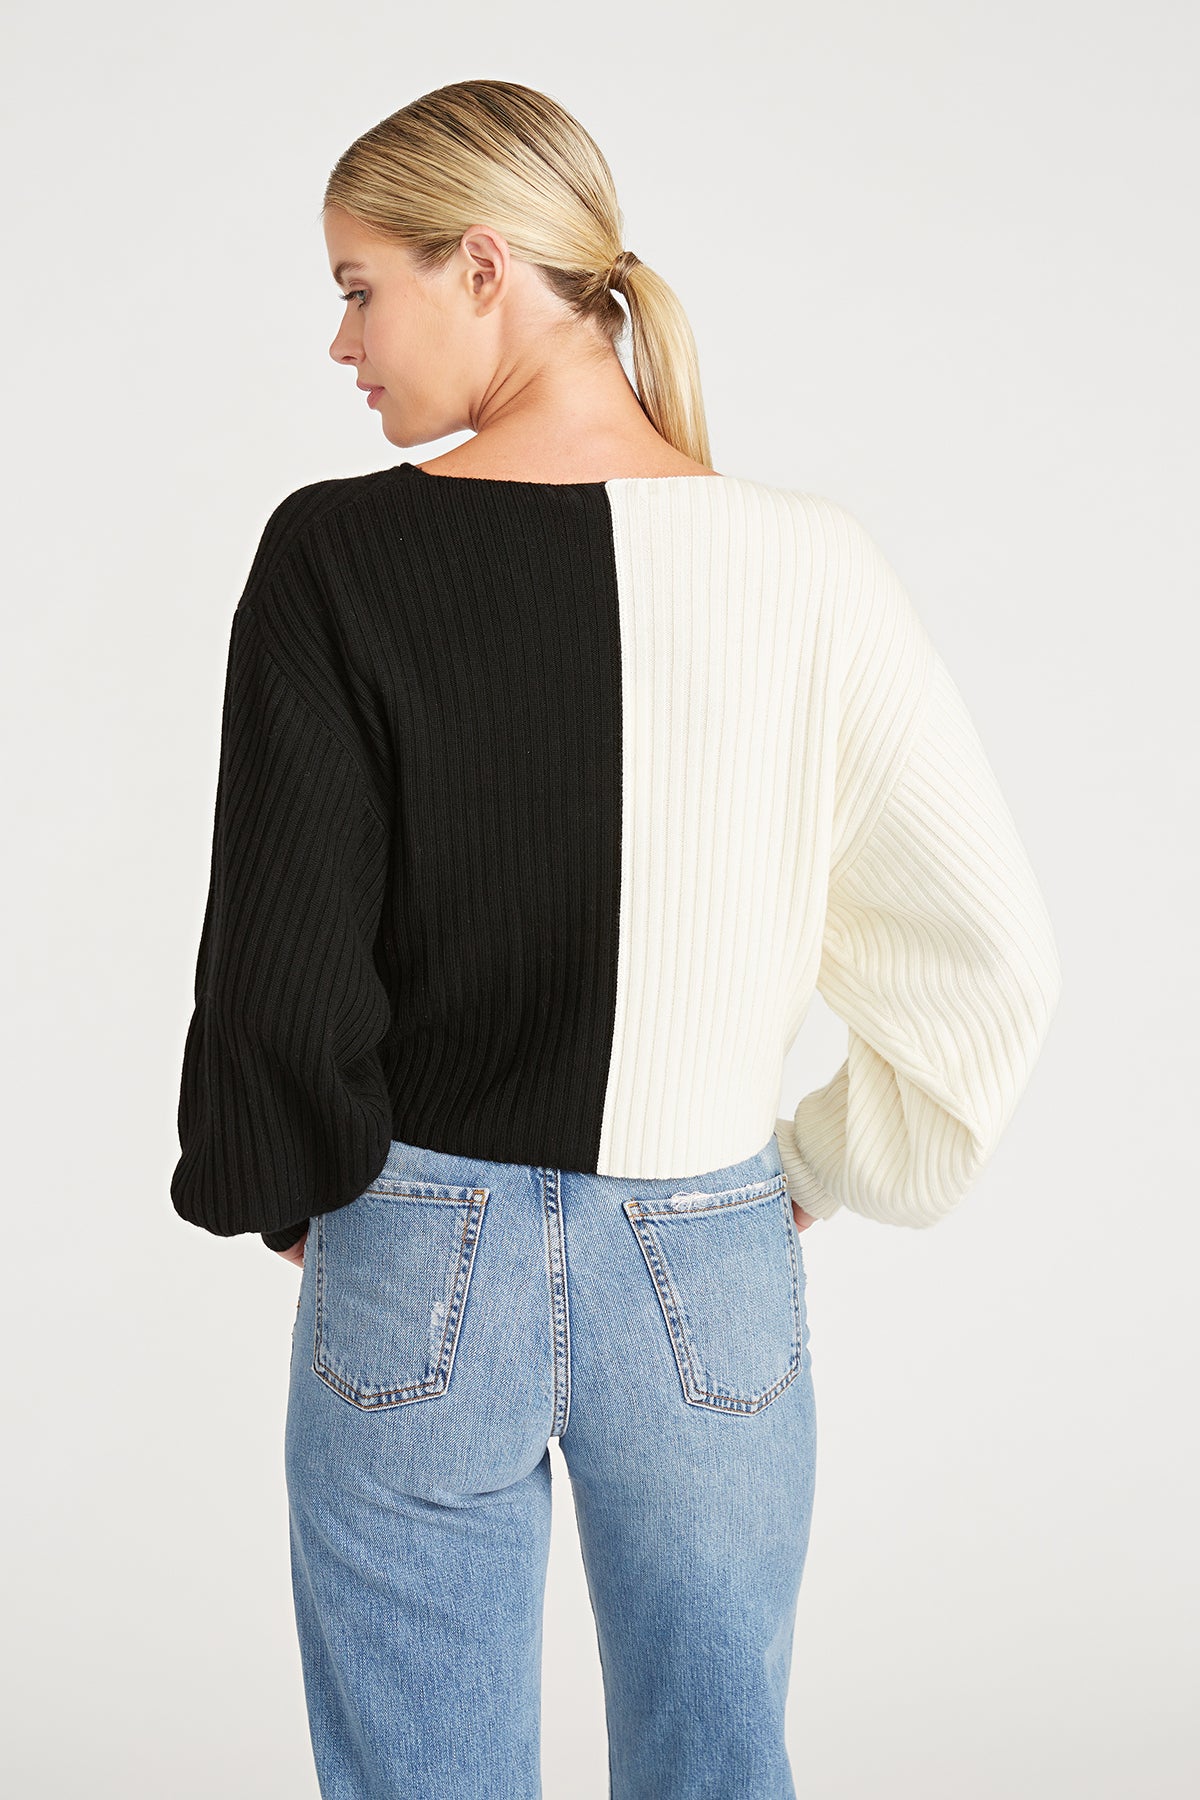 Cruz Twist Sweater